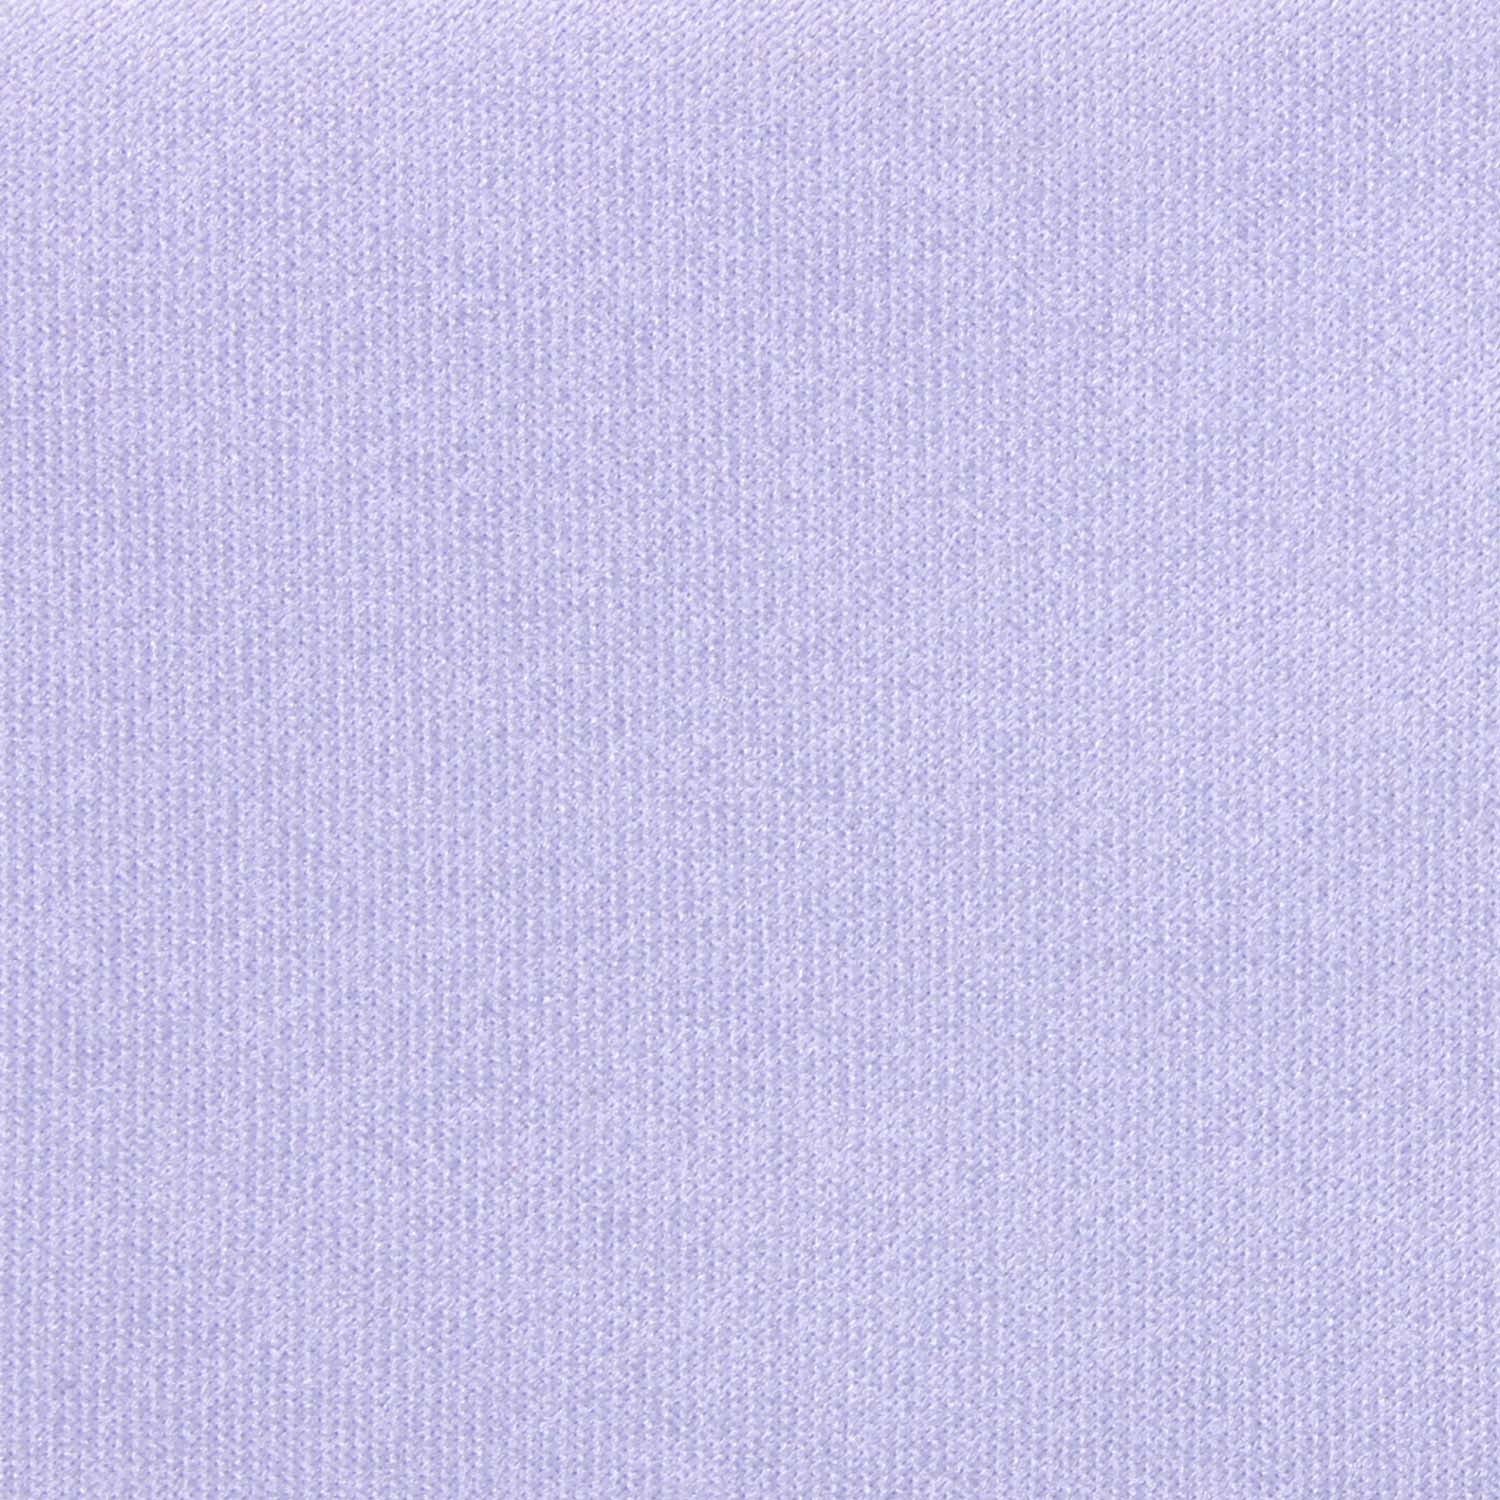 Lavender Purple Satin Fabric Self Tie Diamond Tip Bow TieM147